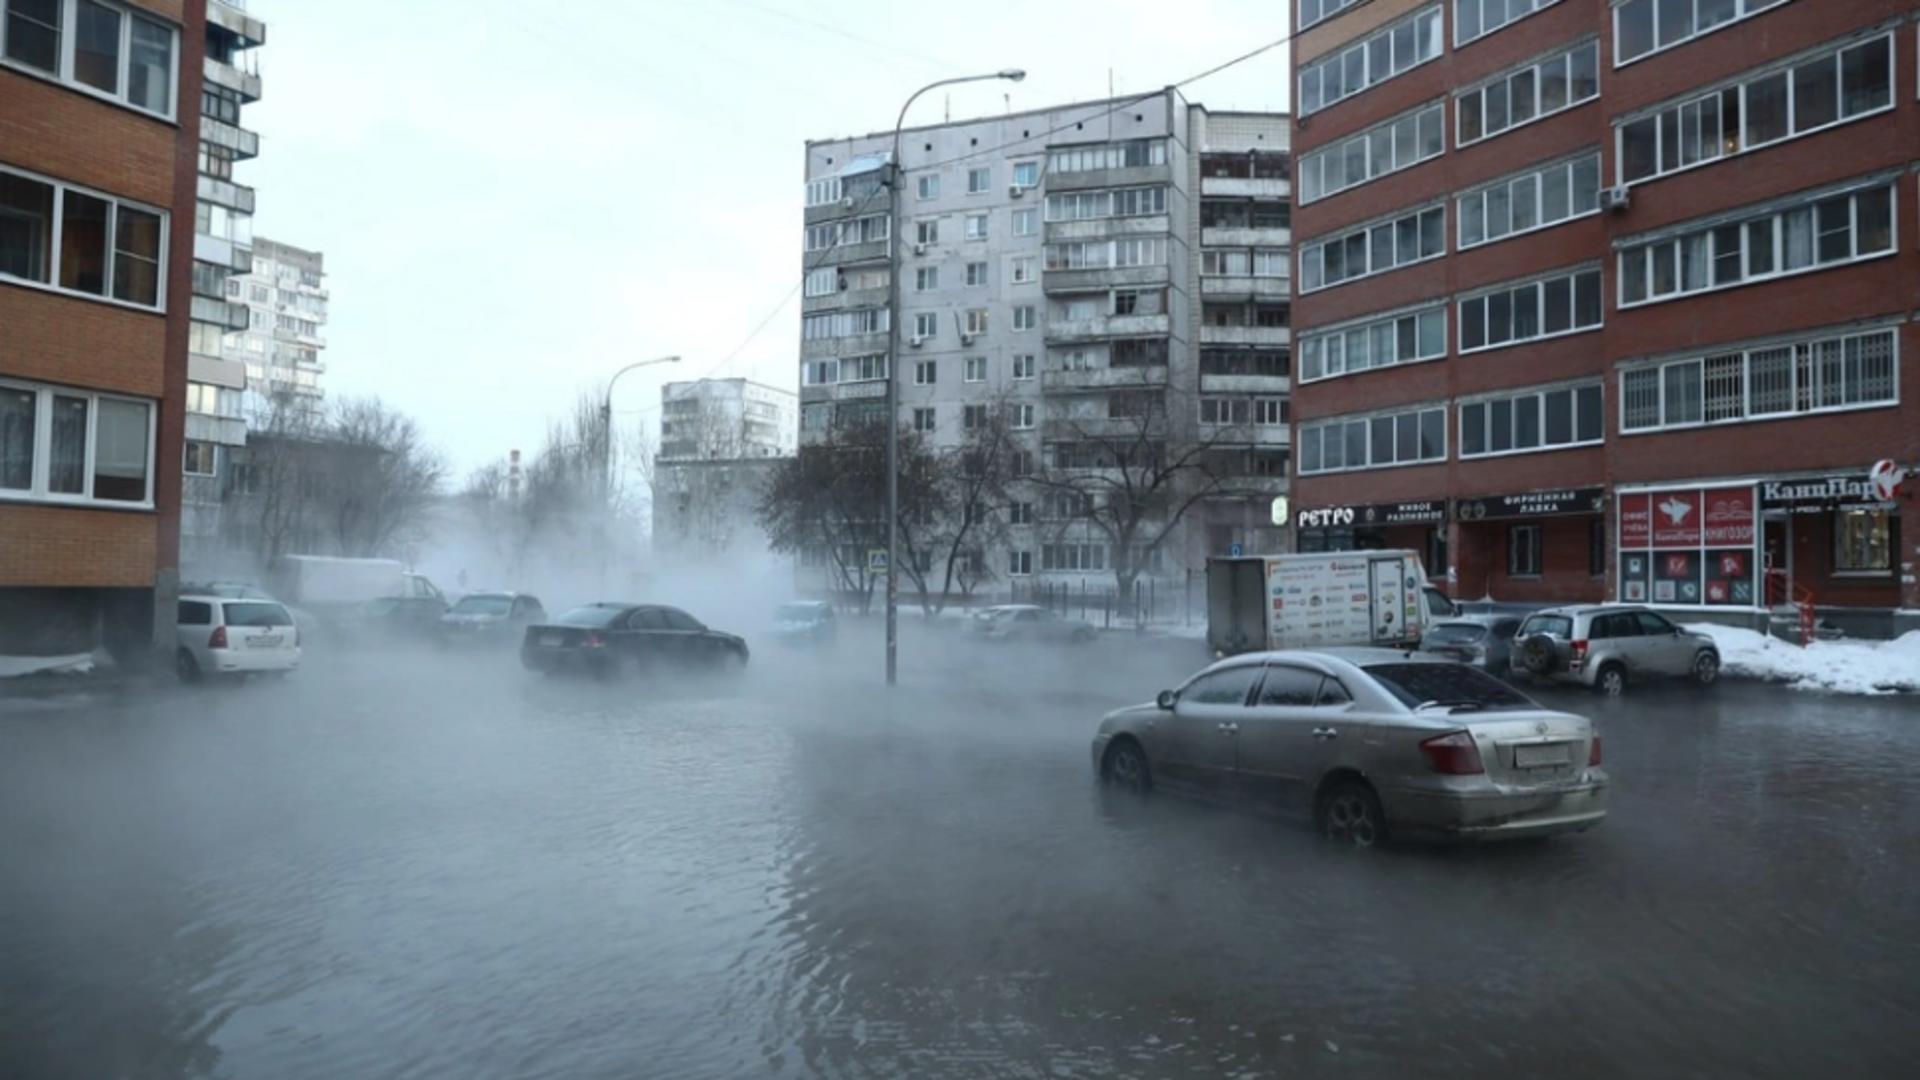 Imagini halucinate într-o metropolă din Rusia. Un râu de apă fiartă curge pe străzi, oamenii îngheață în case – GALERIE FOTO